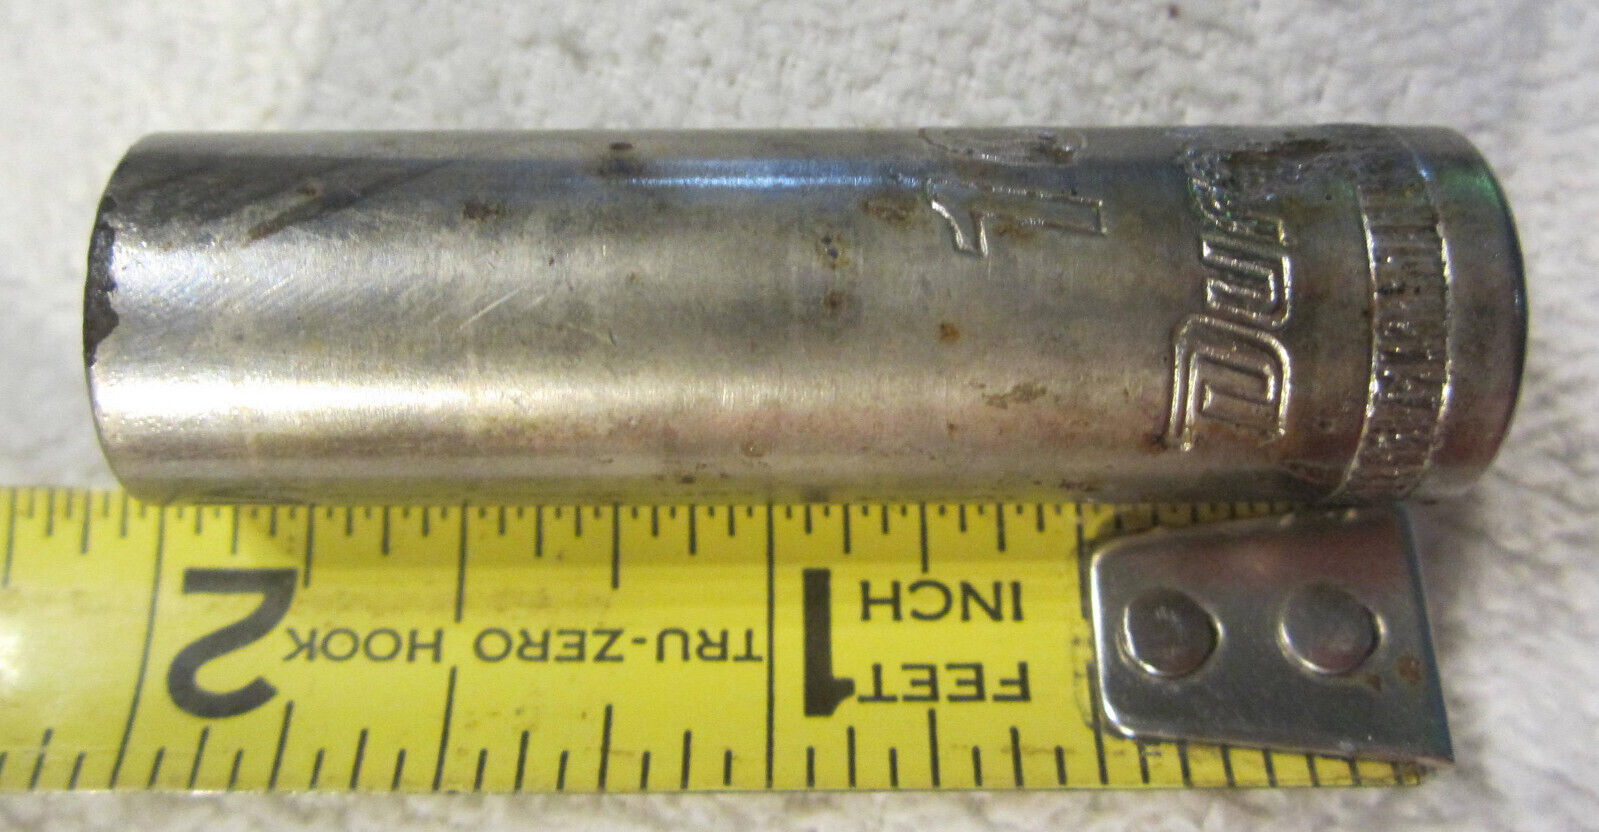 10 mm Duralast deep socket 6 point, 3/8 dr, 50-053,VTg tool,10mm